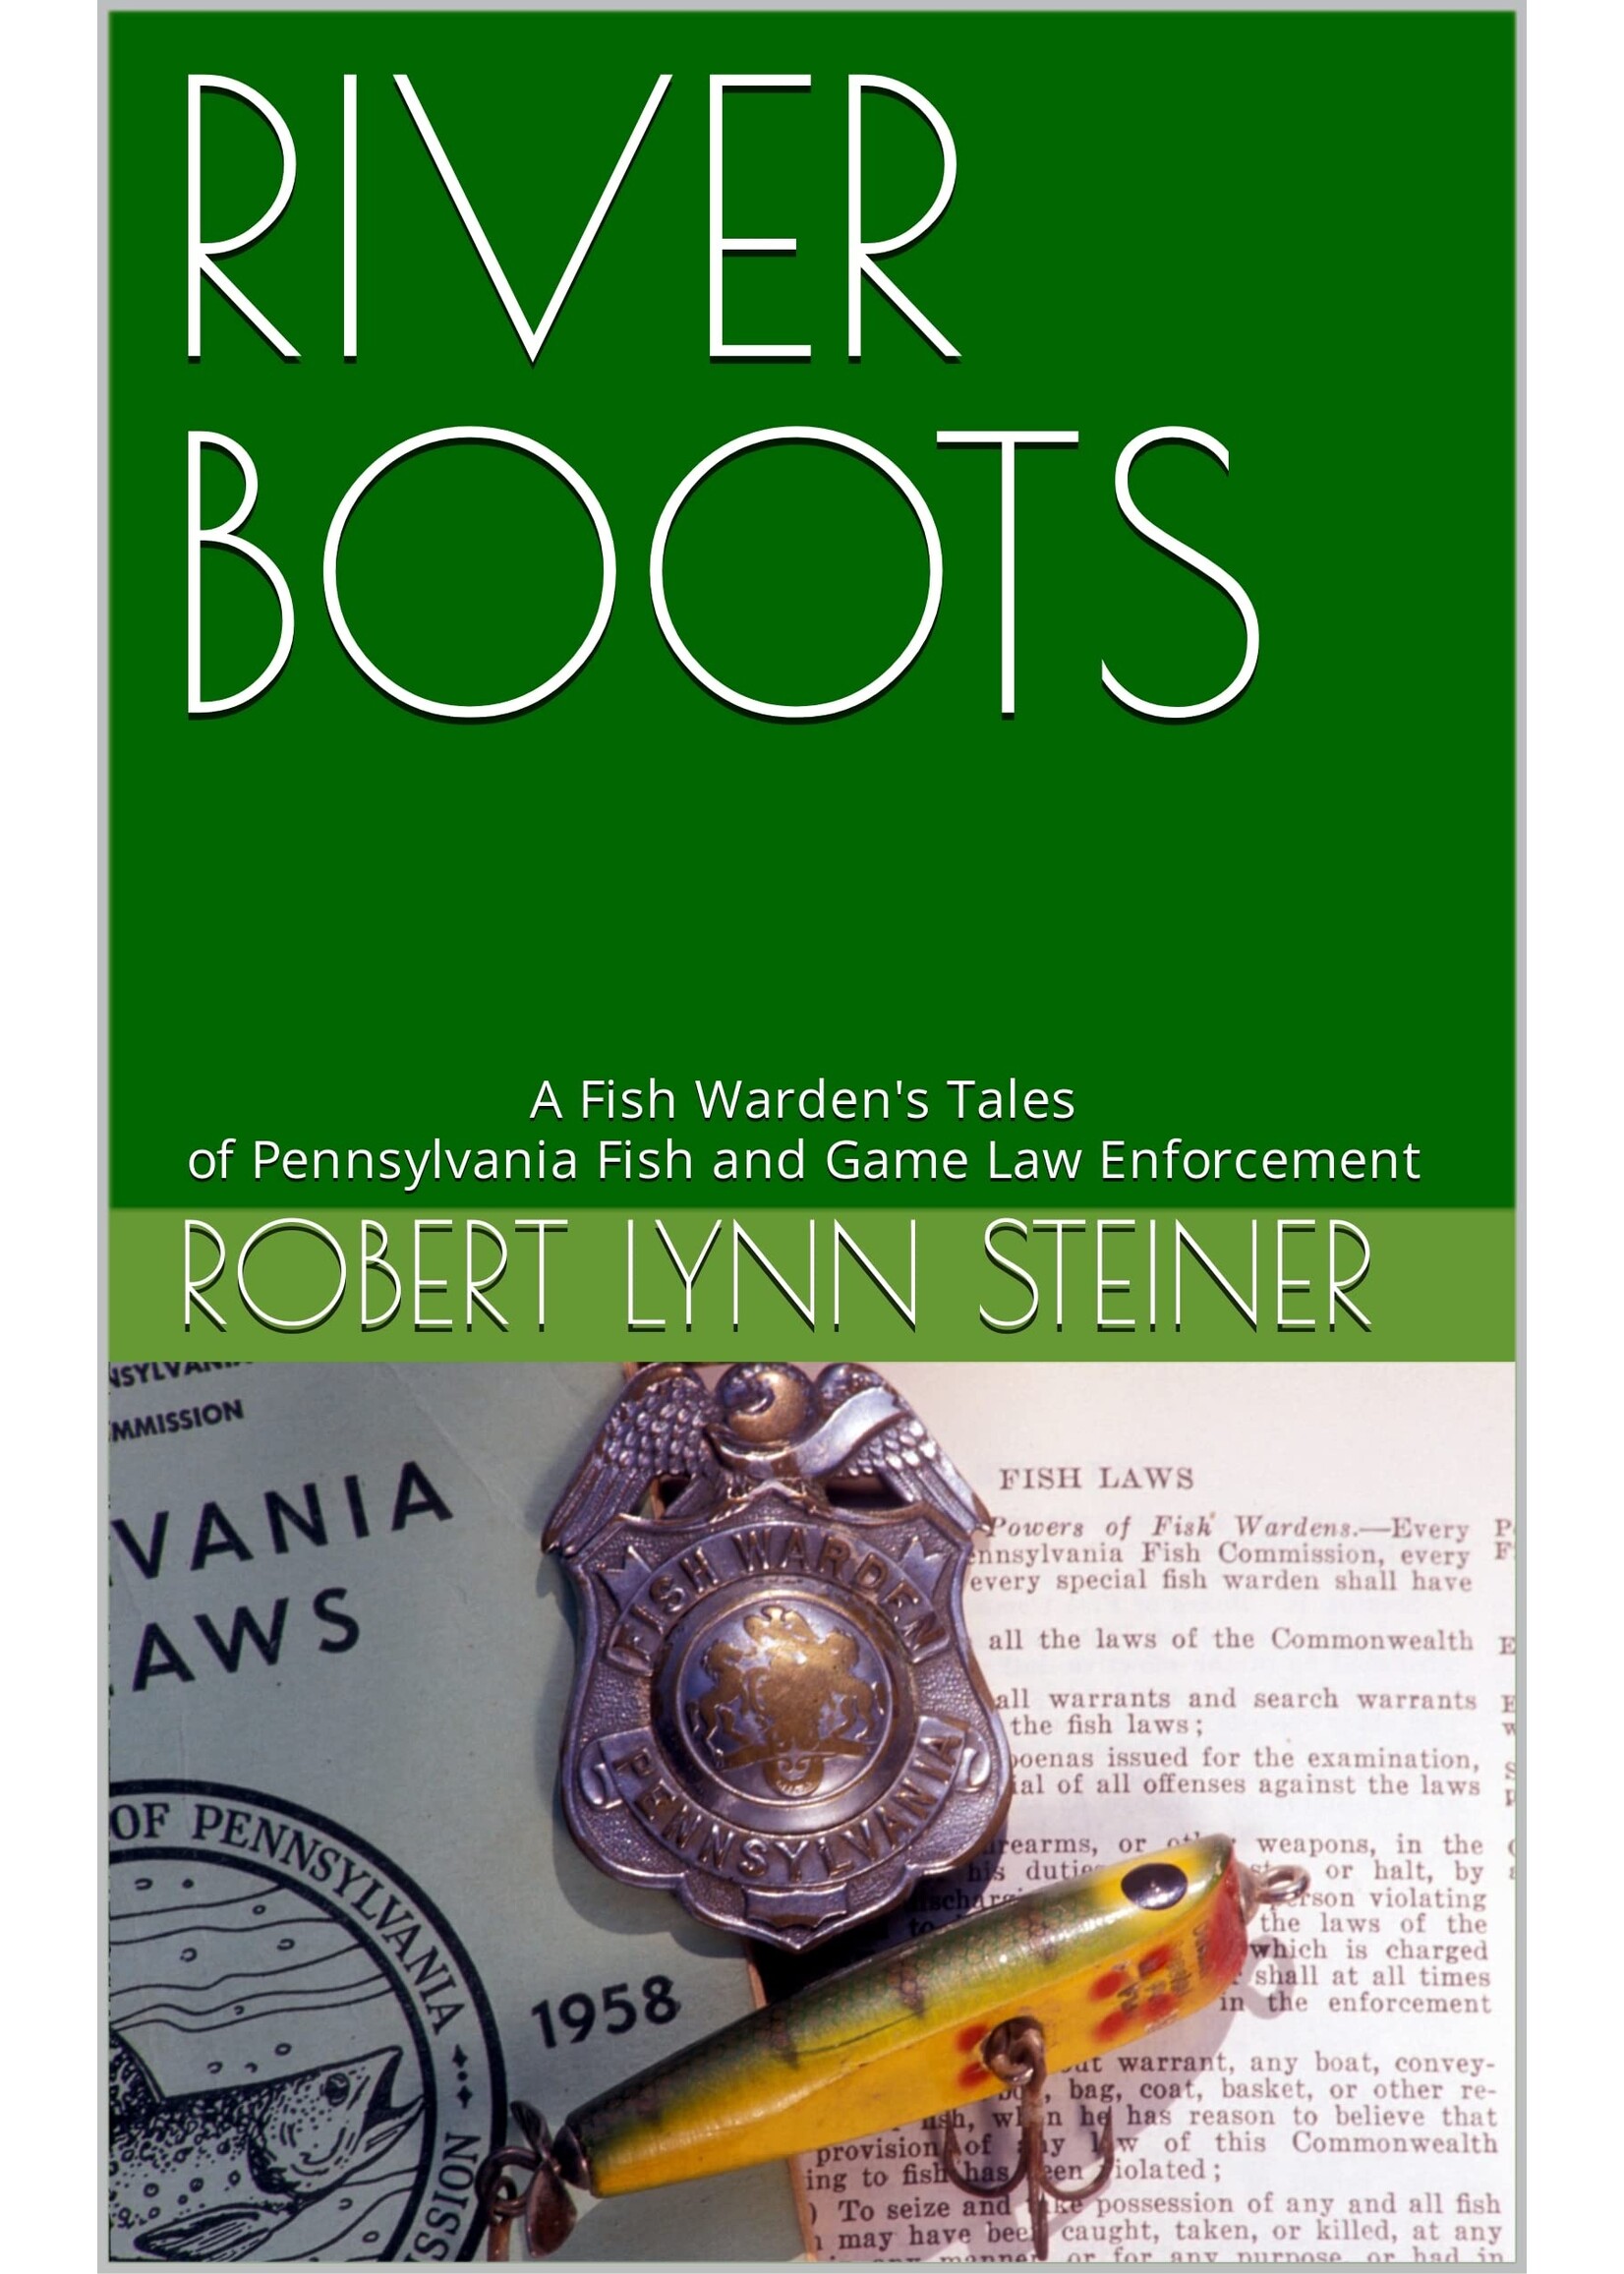 River Boots By Robert Lynn Steiner